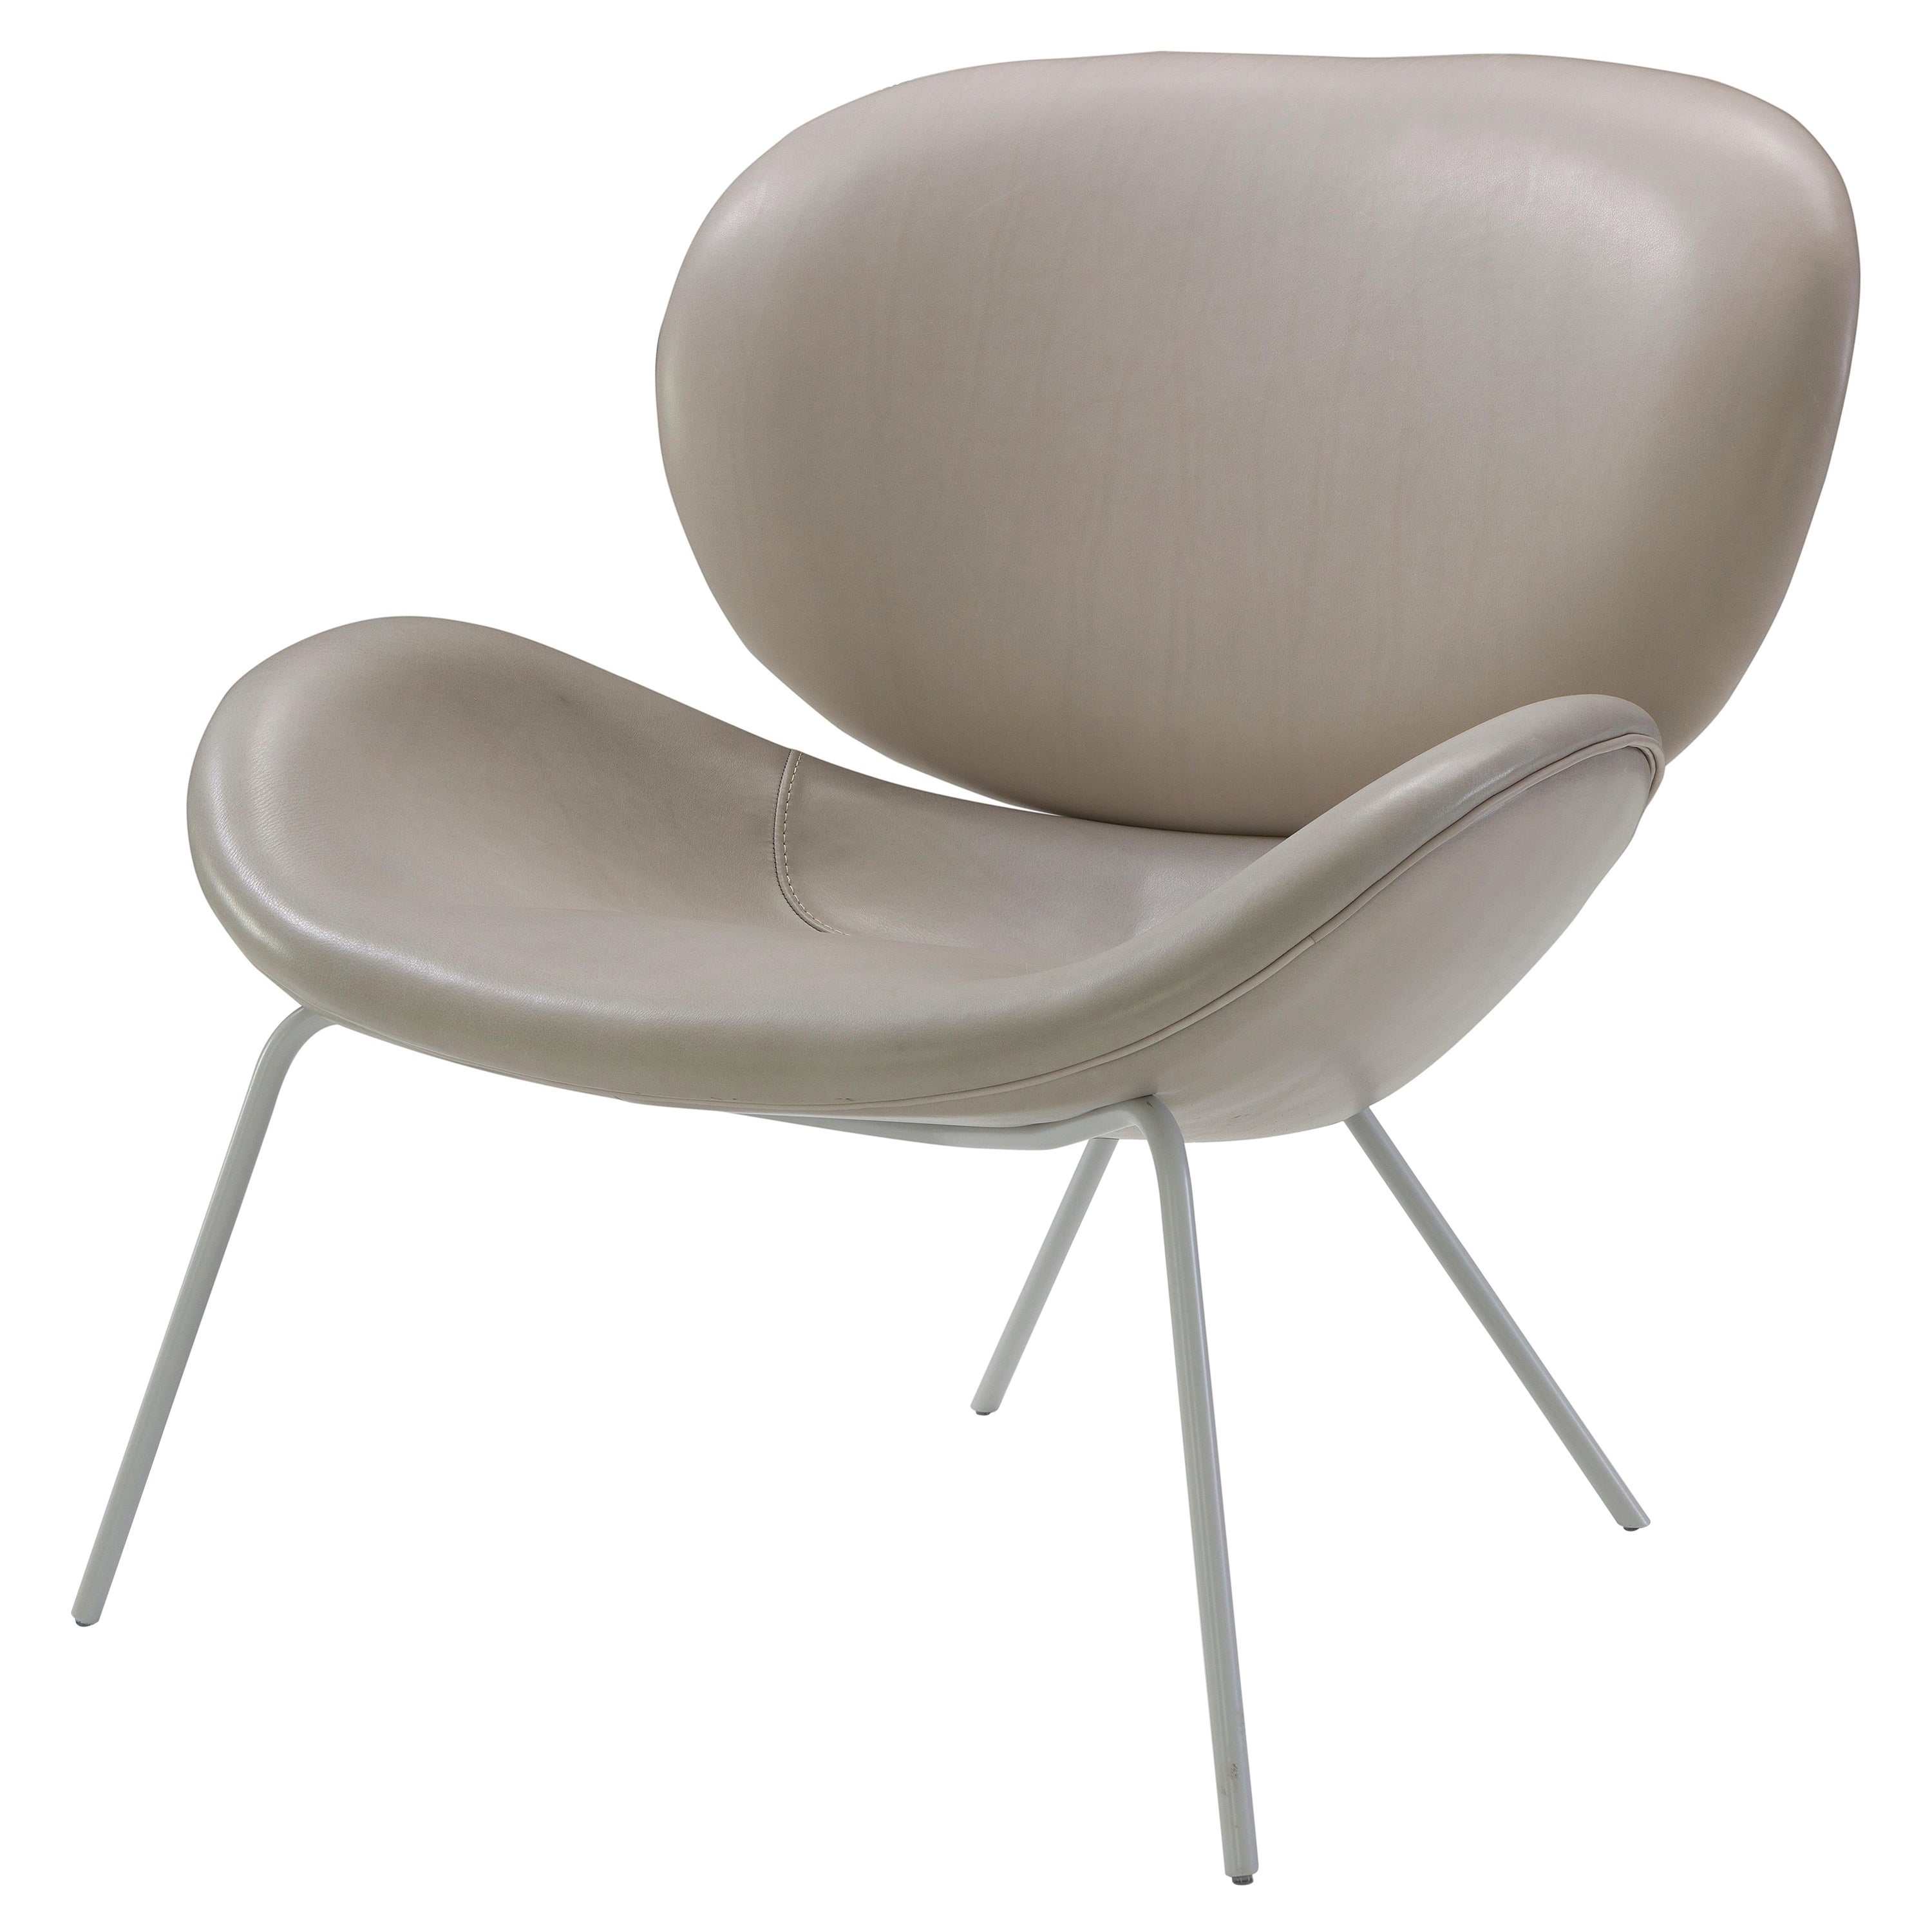 Amura 'Uchiwa' Chair in Gray Leather by Andrea Quaglio & Manuela Simonelli For Sale